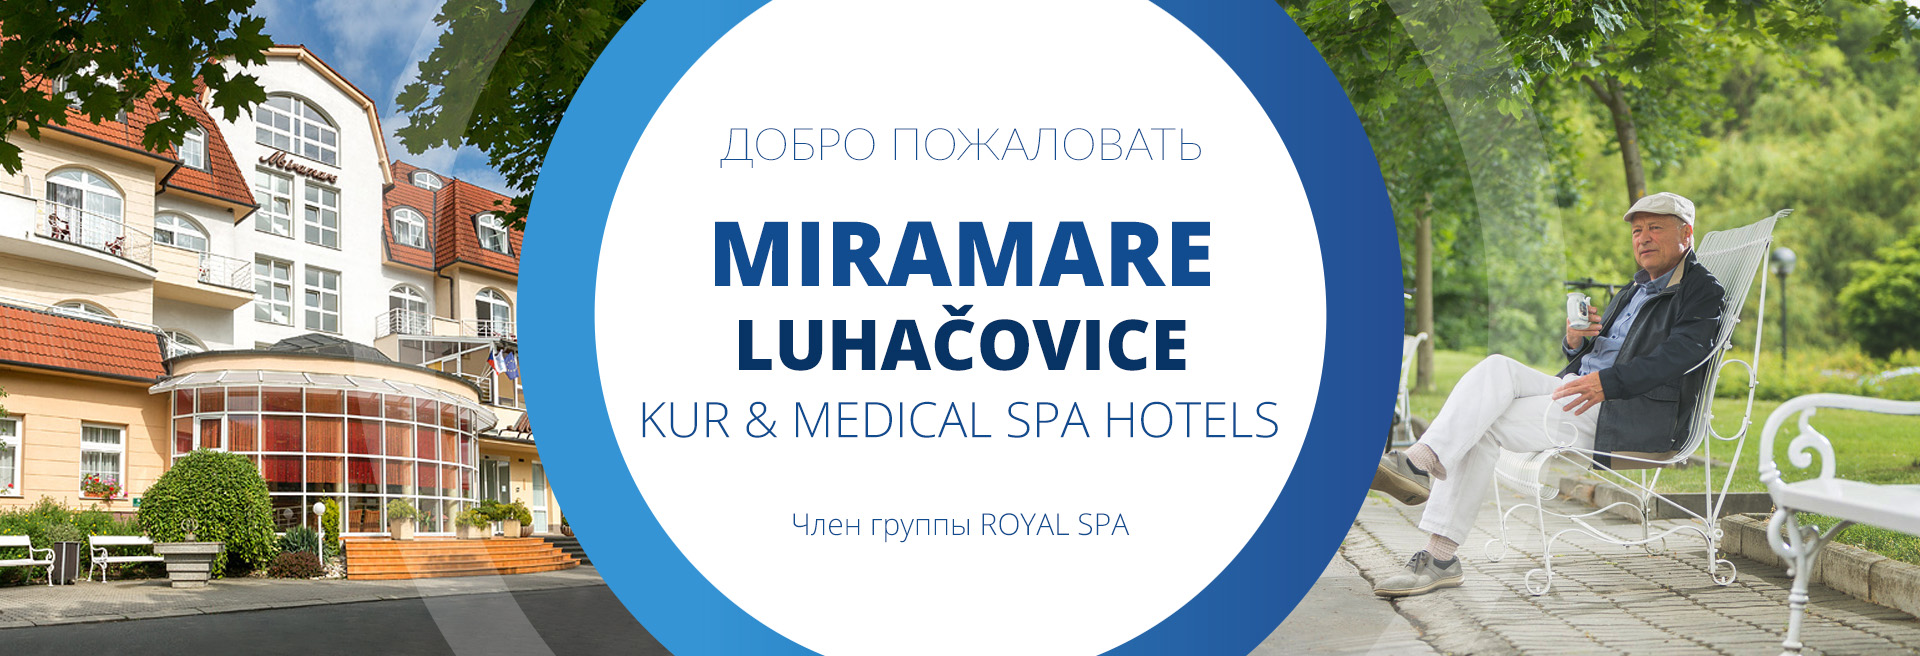 Проживание - Курортные отели MIRAMARE Luhačovice